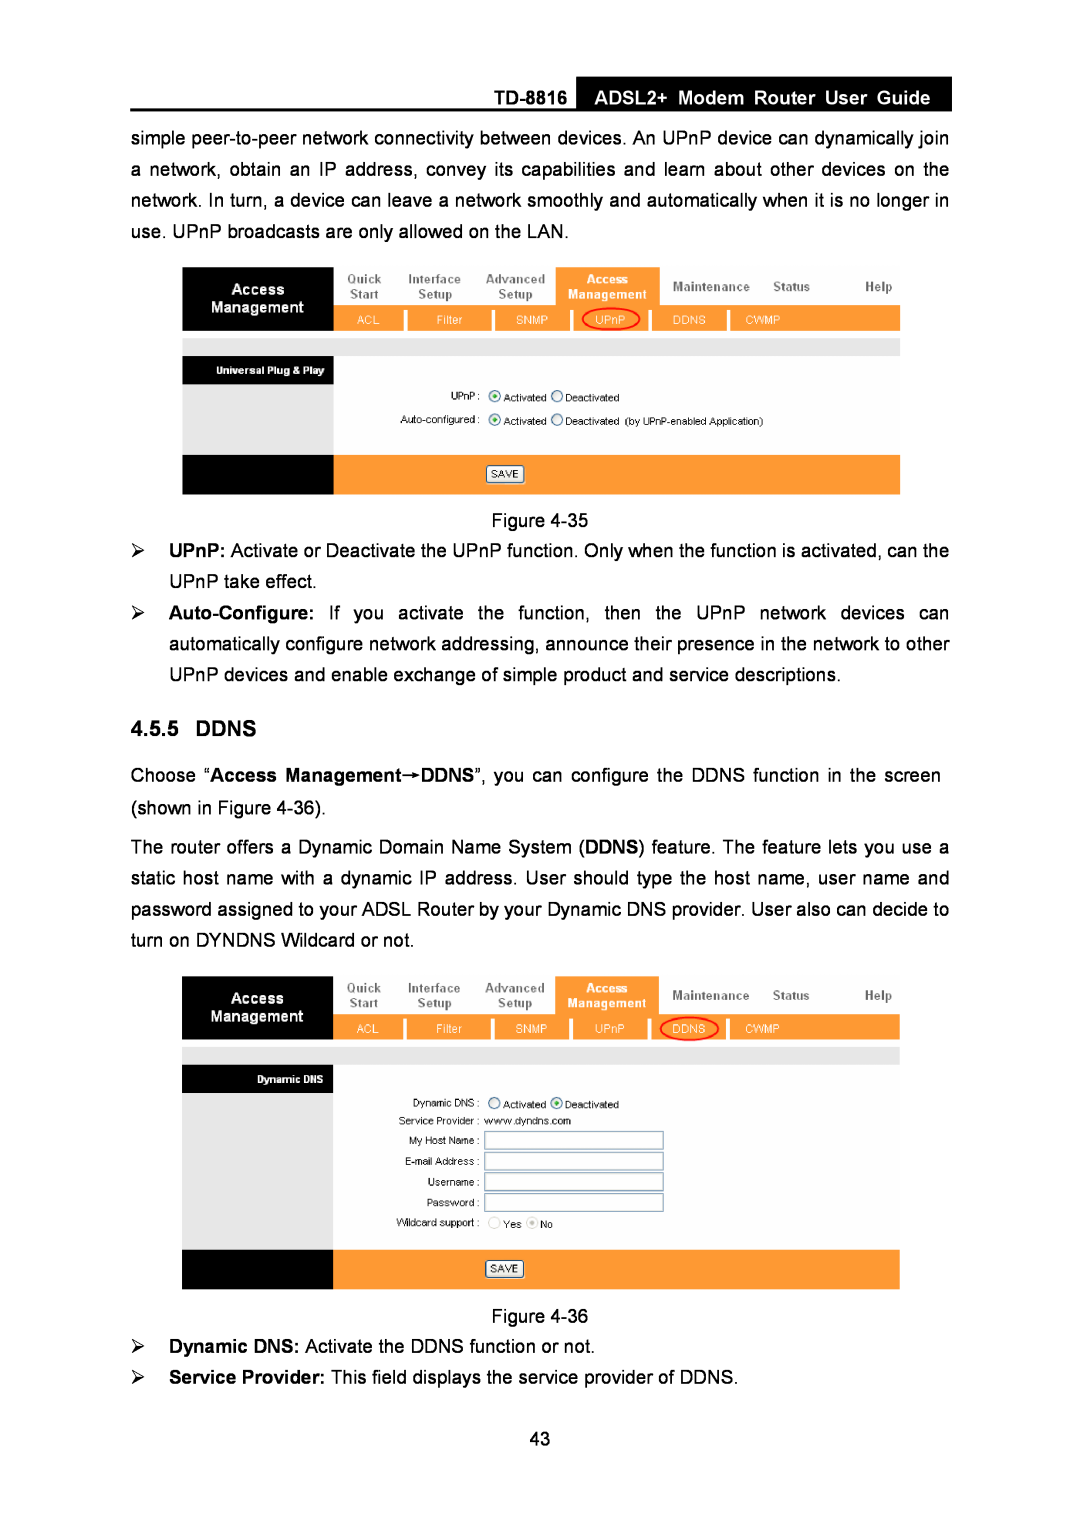 TP-Link TD-8816 manual Ddns, ADSL2+ Modem Router User Guide 